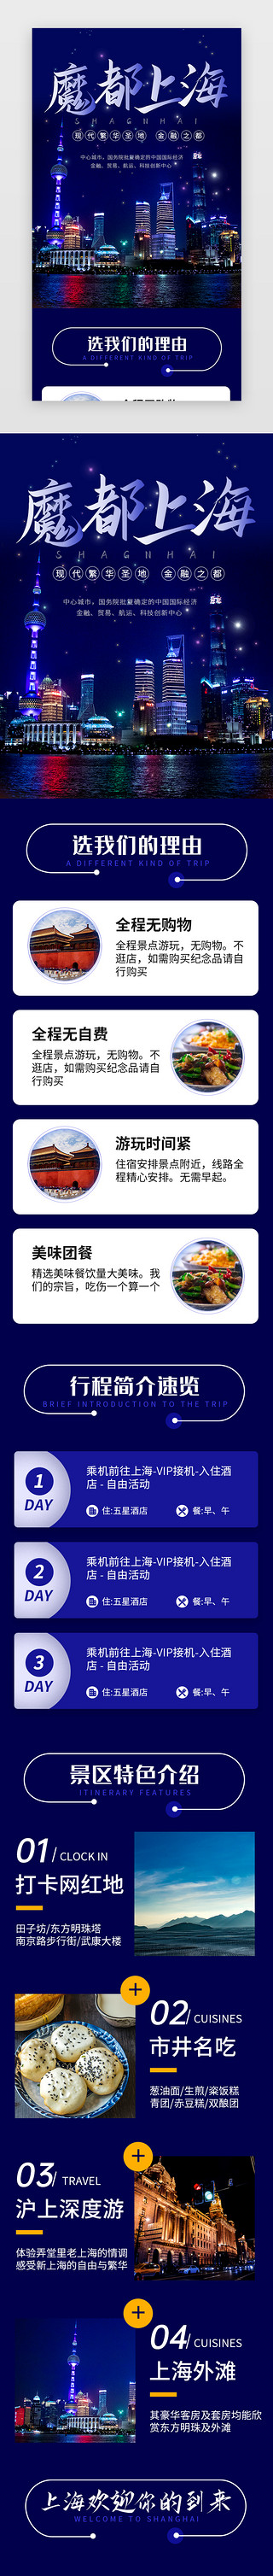 尾巴旅行UI设计素材_蓝色魔都上海旅行景点介绍H5长图海报